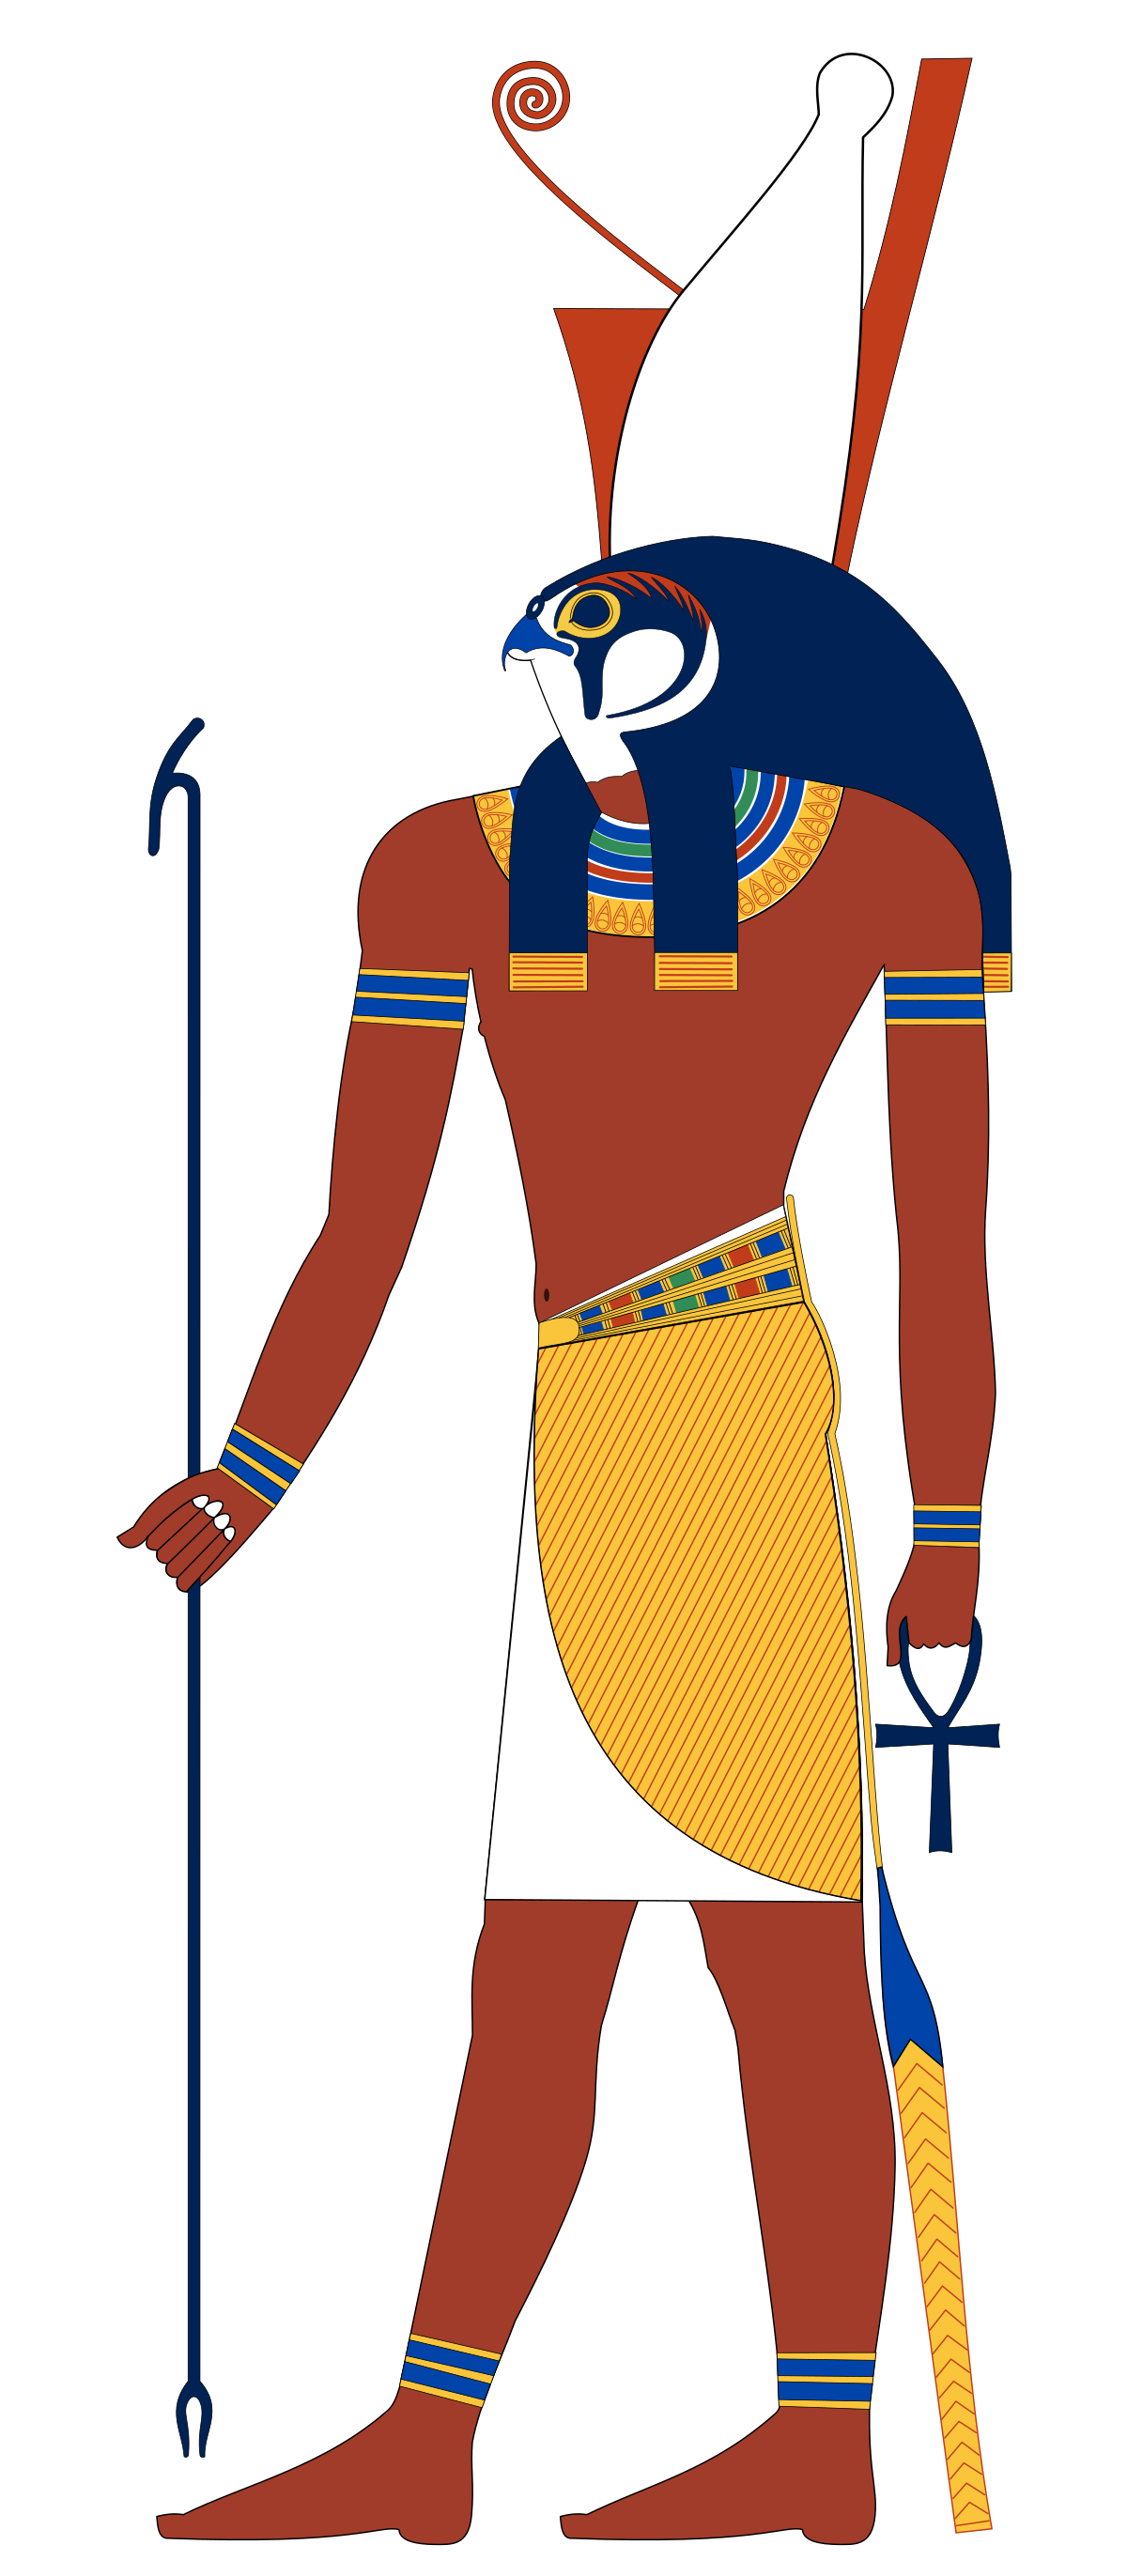 Hãy ngắm nhìn những hình hình ảnh về Ai Cập vị thần nhằm tìm hiểu kín của một trong mỗi tôn giáo thắm thiết nhất toàn cầu.